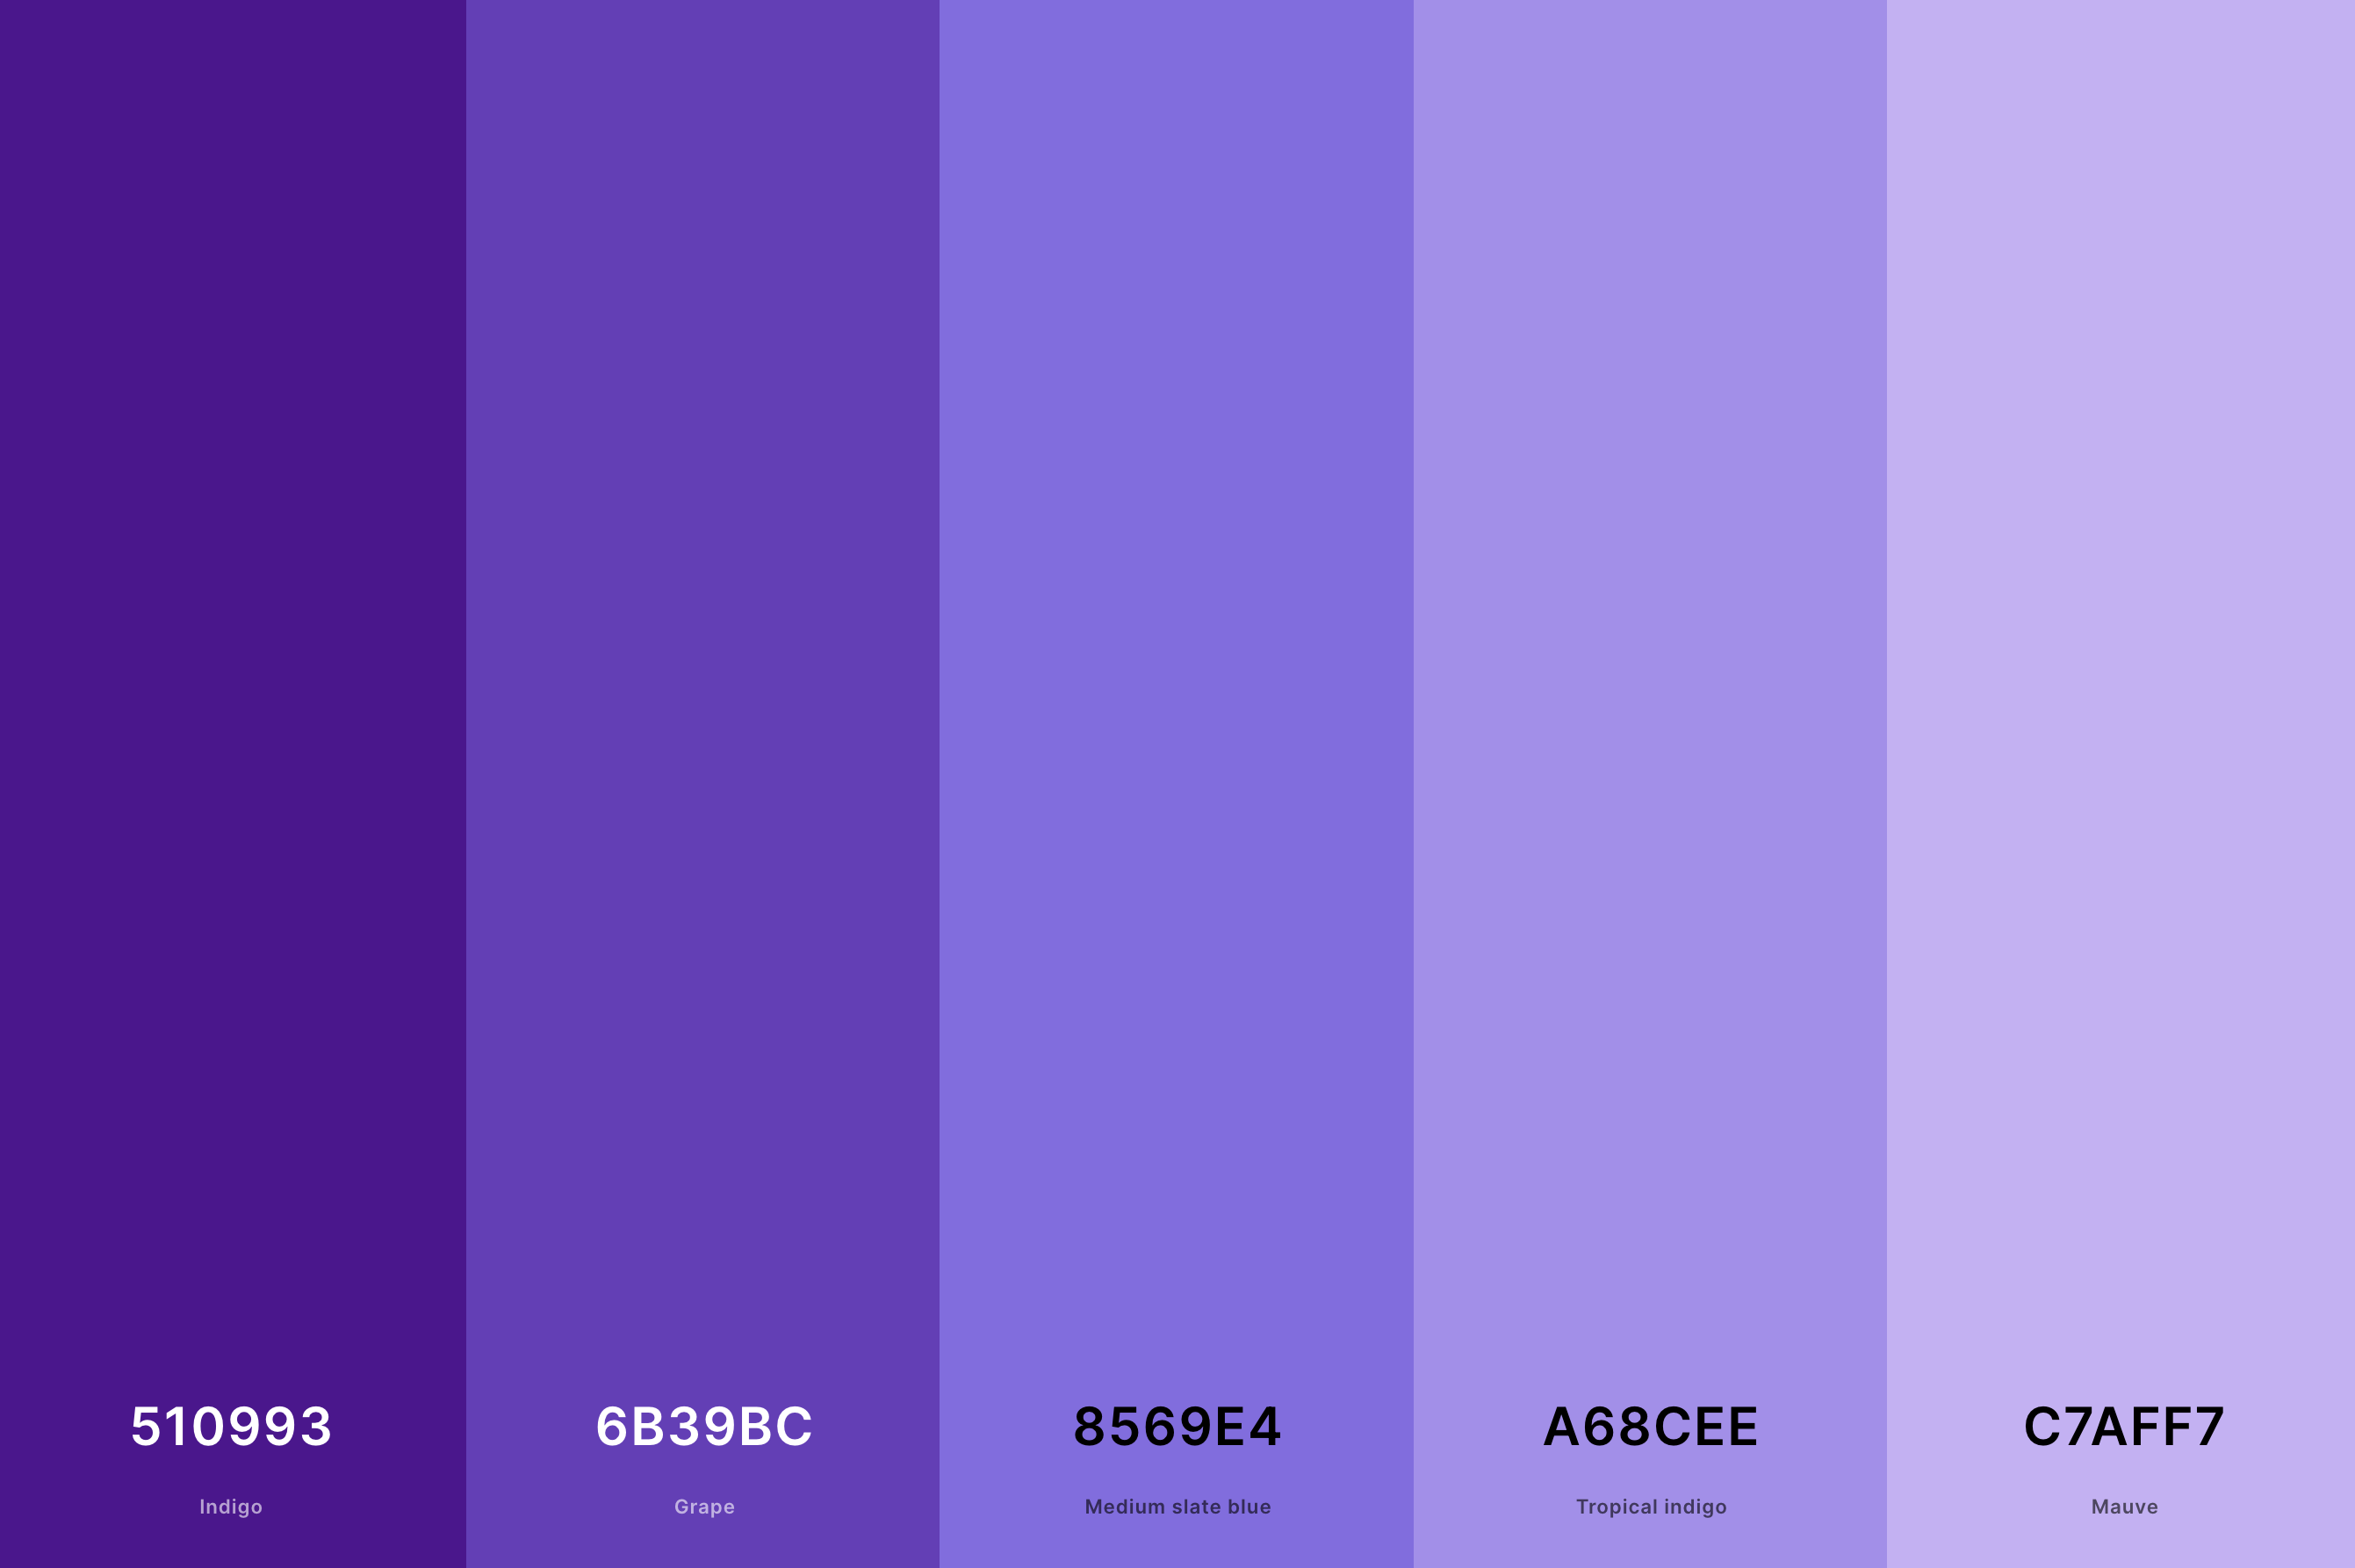 10. Aesthetic Purple Color Palette Color Palette with Indigo (Hex #510993) + Grape (Hex #6B39BC) + Medium Slate Blue (Hex #8569E4) + Tropical Indigo (Hex #A68CEE) + Mauve (Hex #C7AFF7) Color Palette with Hex Codes